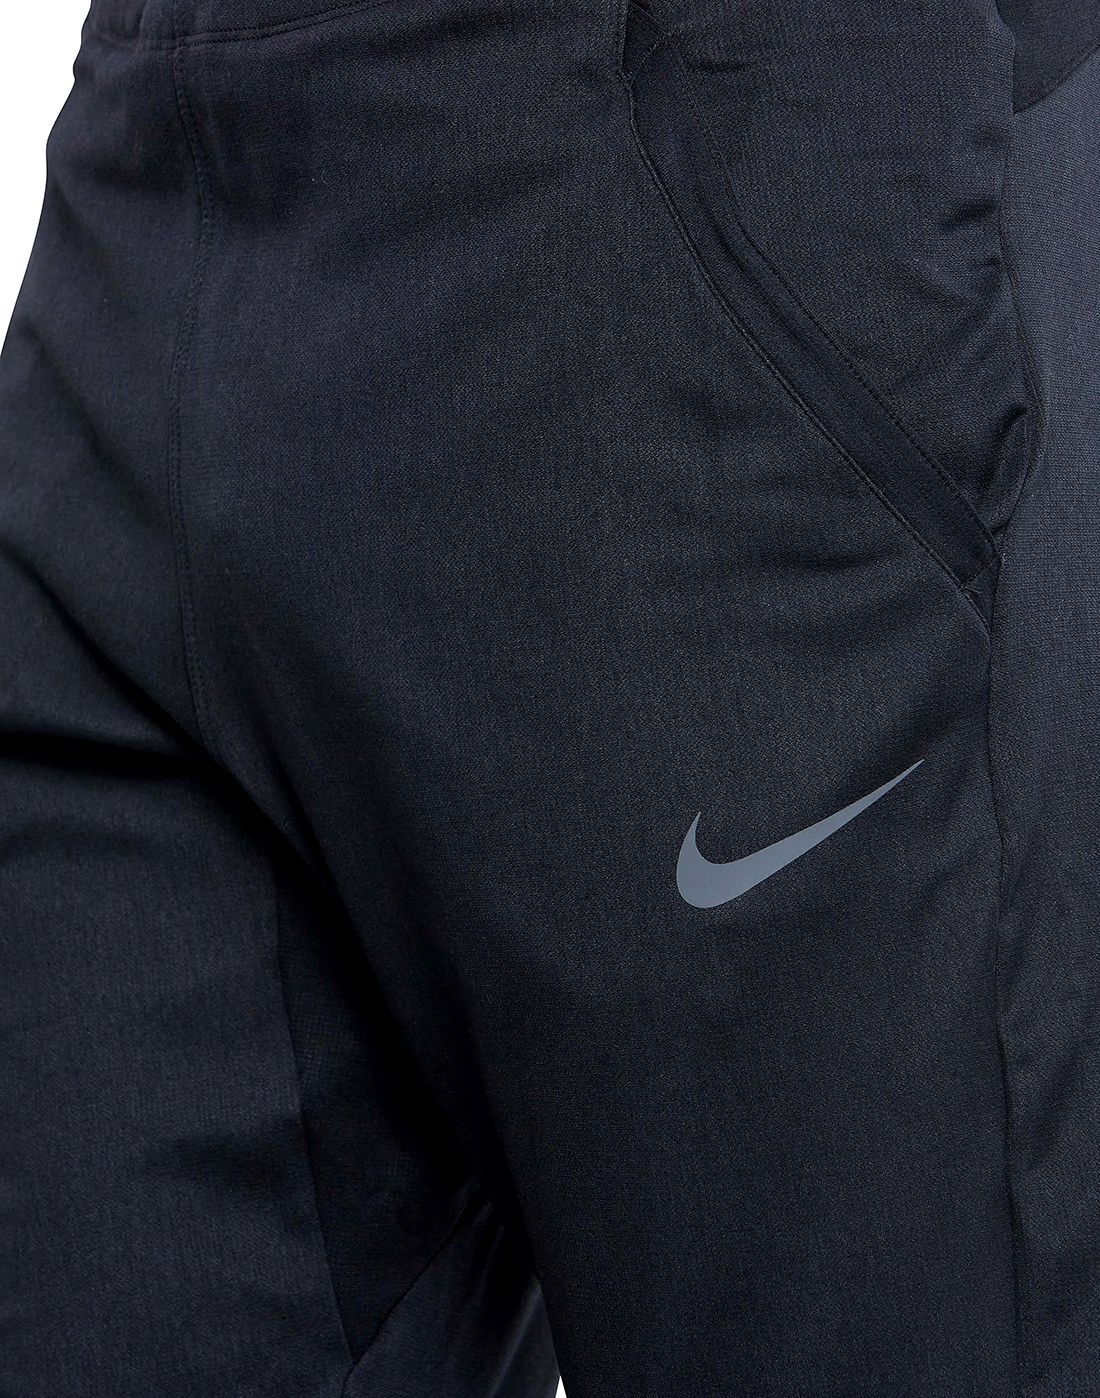 Nike Mens Pro Capra Pants - Black | Life Style Sports IE